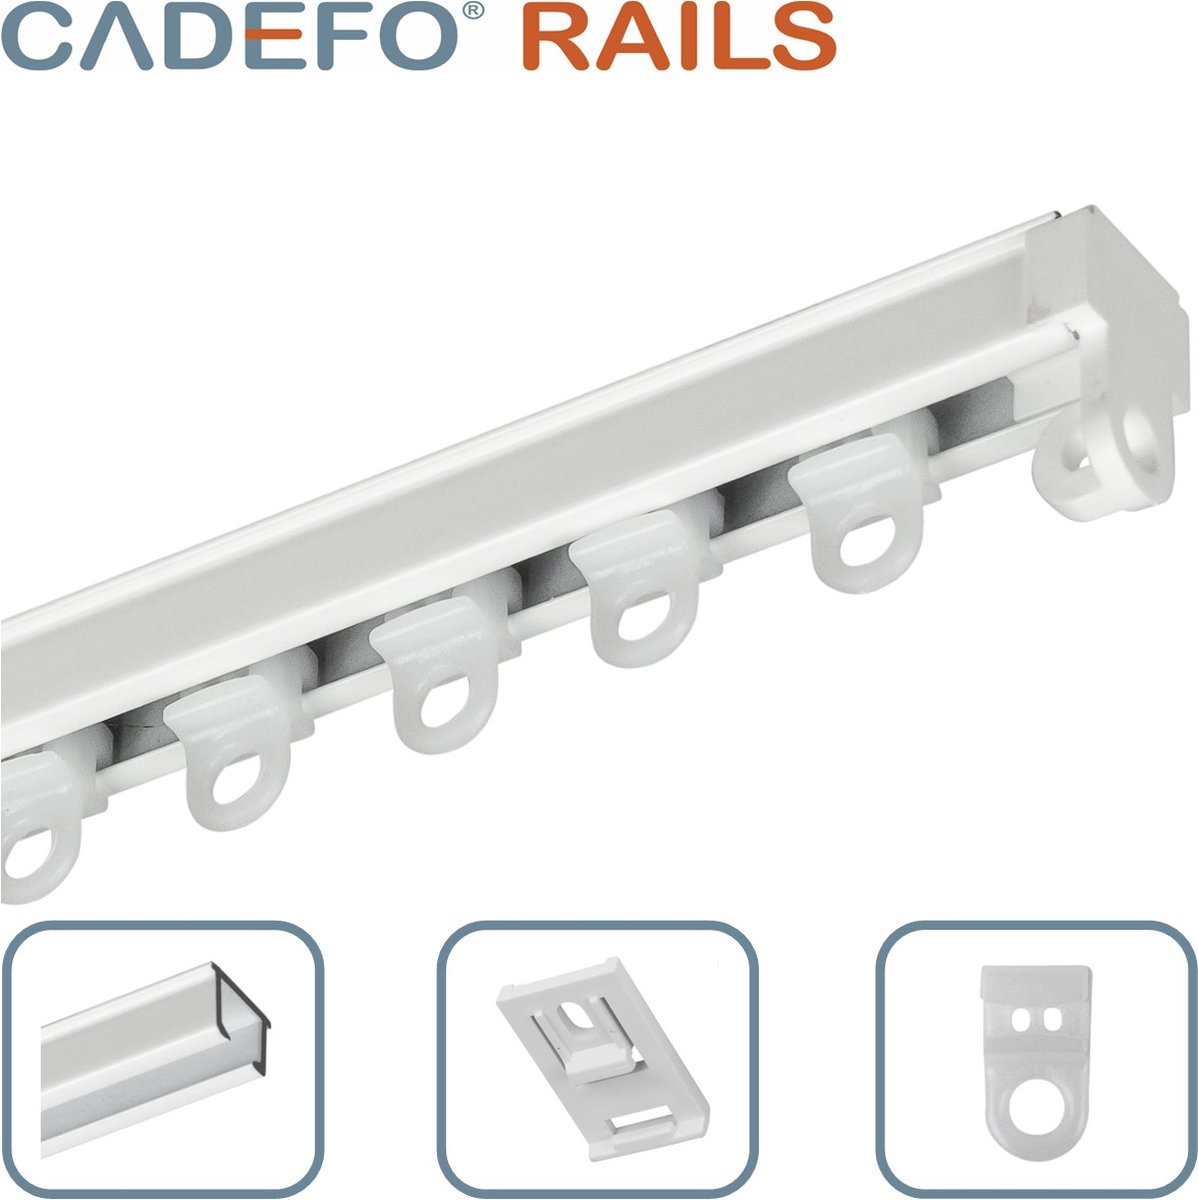 CADEFO RAILS (251 - 300 cm) Gordijnrails - Compleet op maat! - UIT 1 STUK - Leverbaar tot 6 meter - Plafondbevestiging - Lengte 251 cm